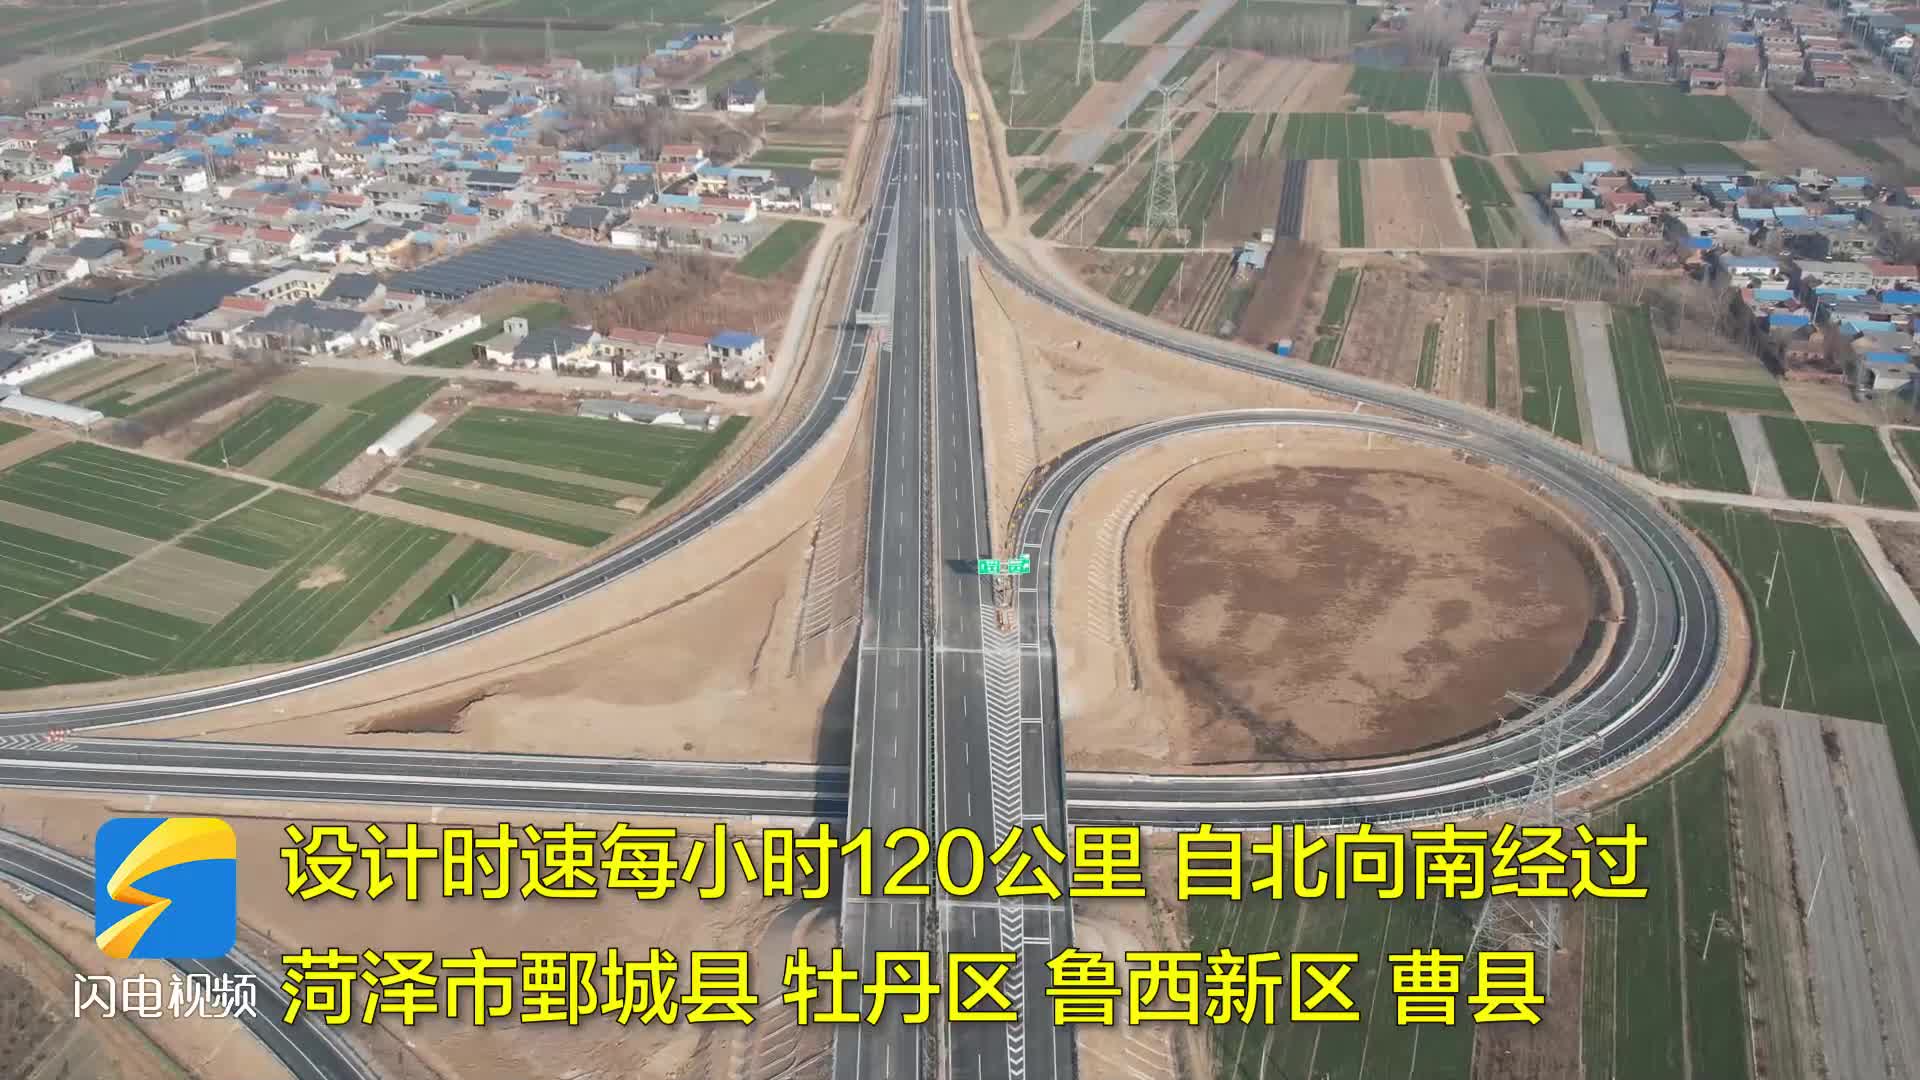 濮新高速公路菏泽段今天正式通车 鲁豫之间新增一条快速运输通道